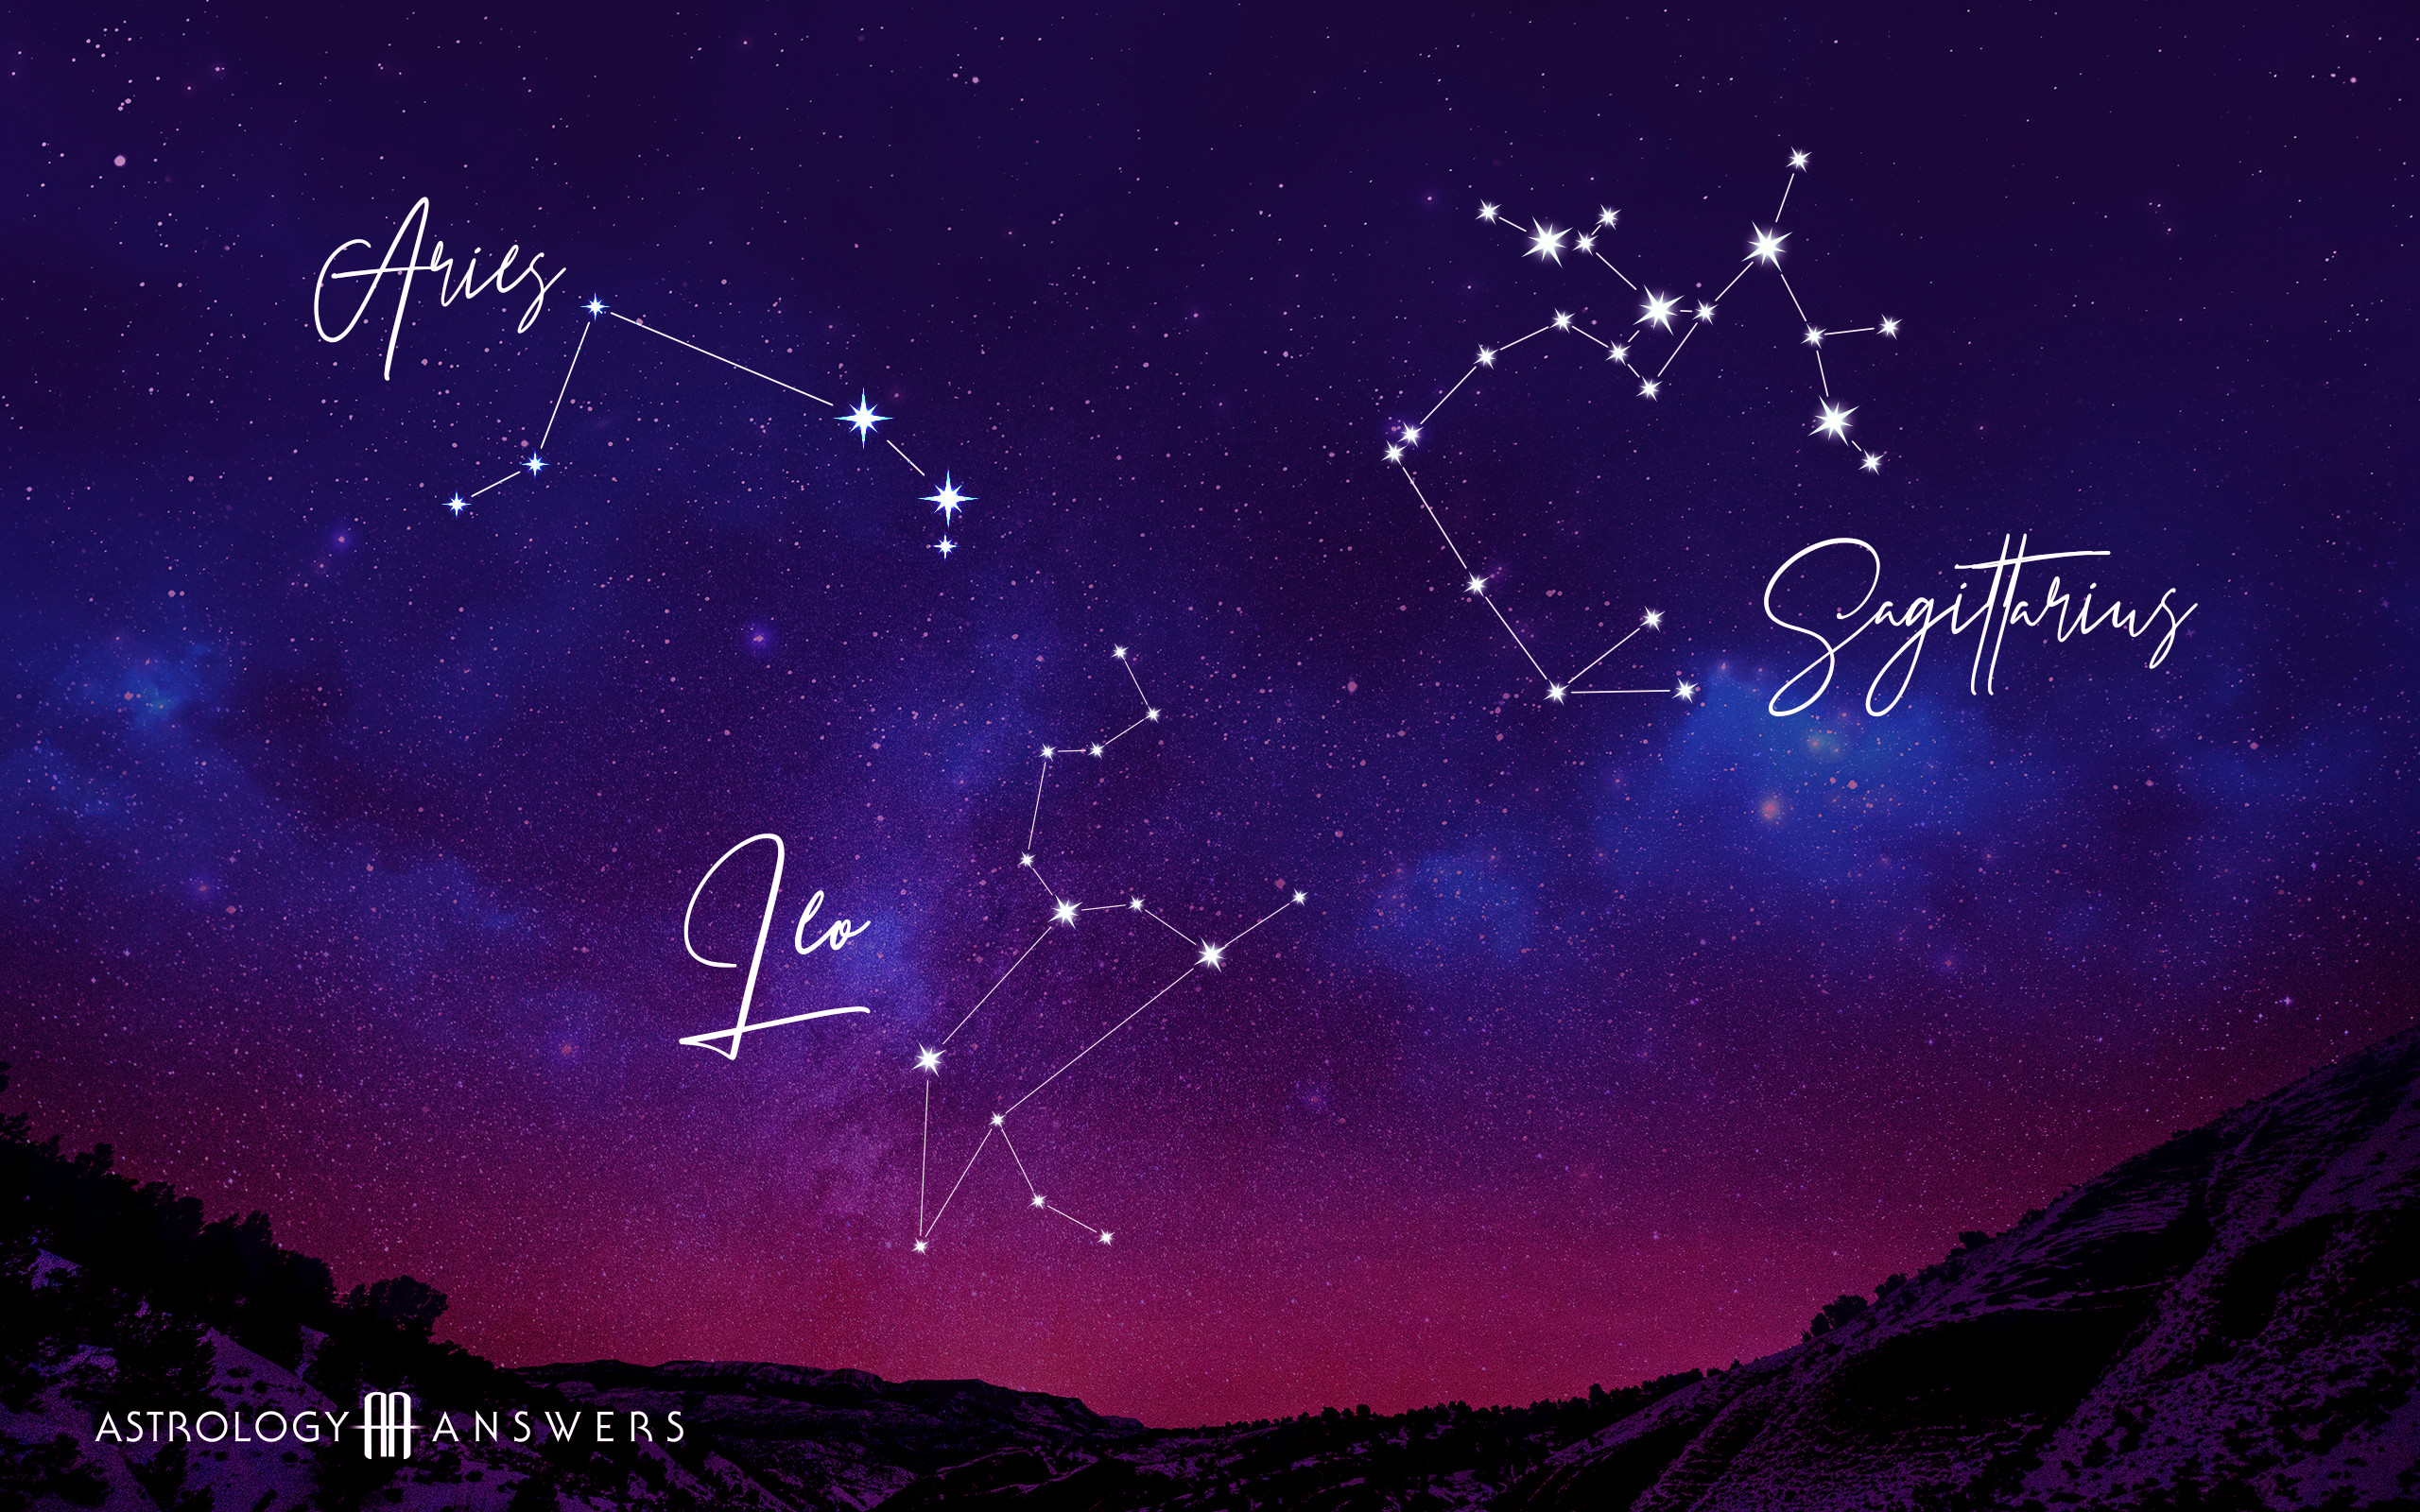 星座の壁紙,空,夜,天体,雰囲気,星